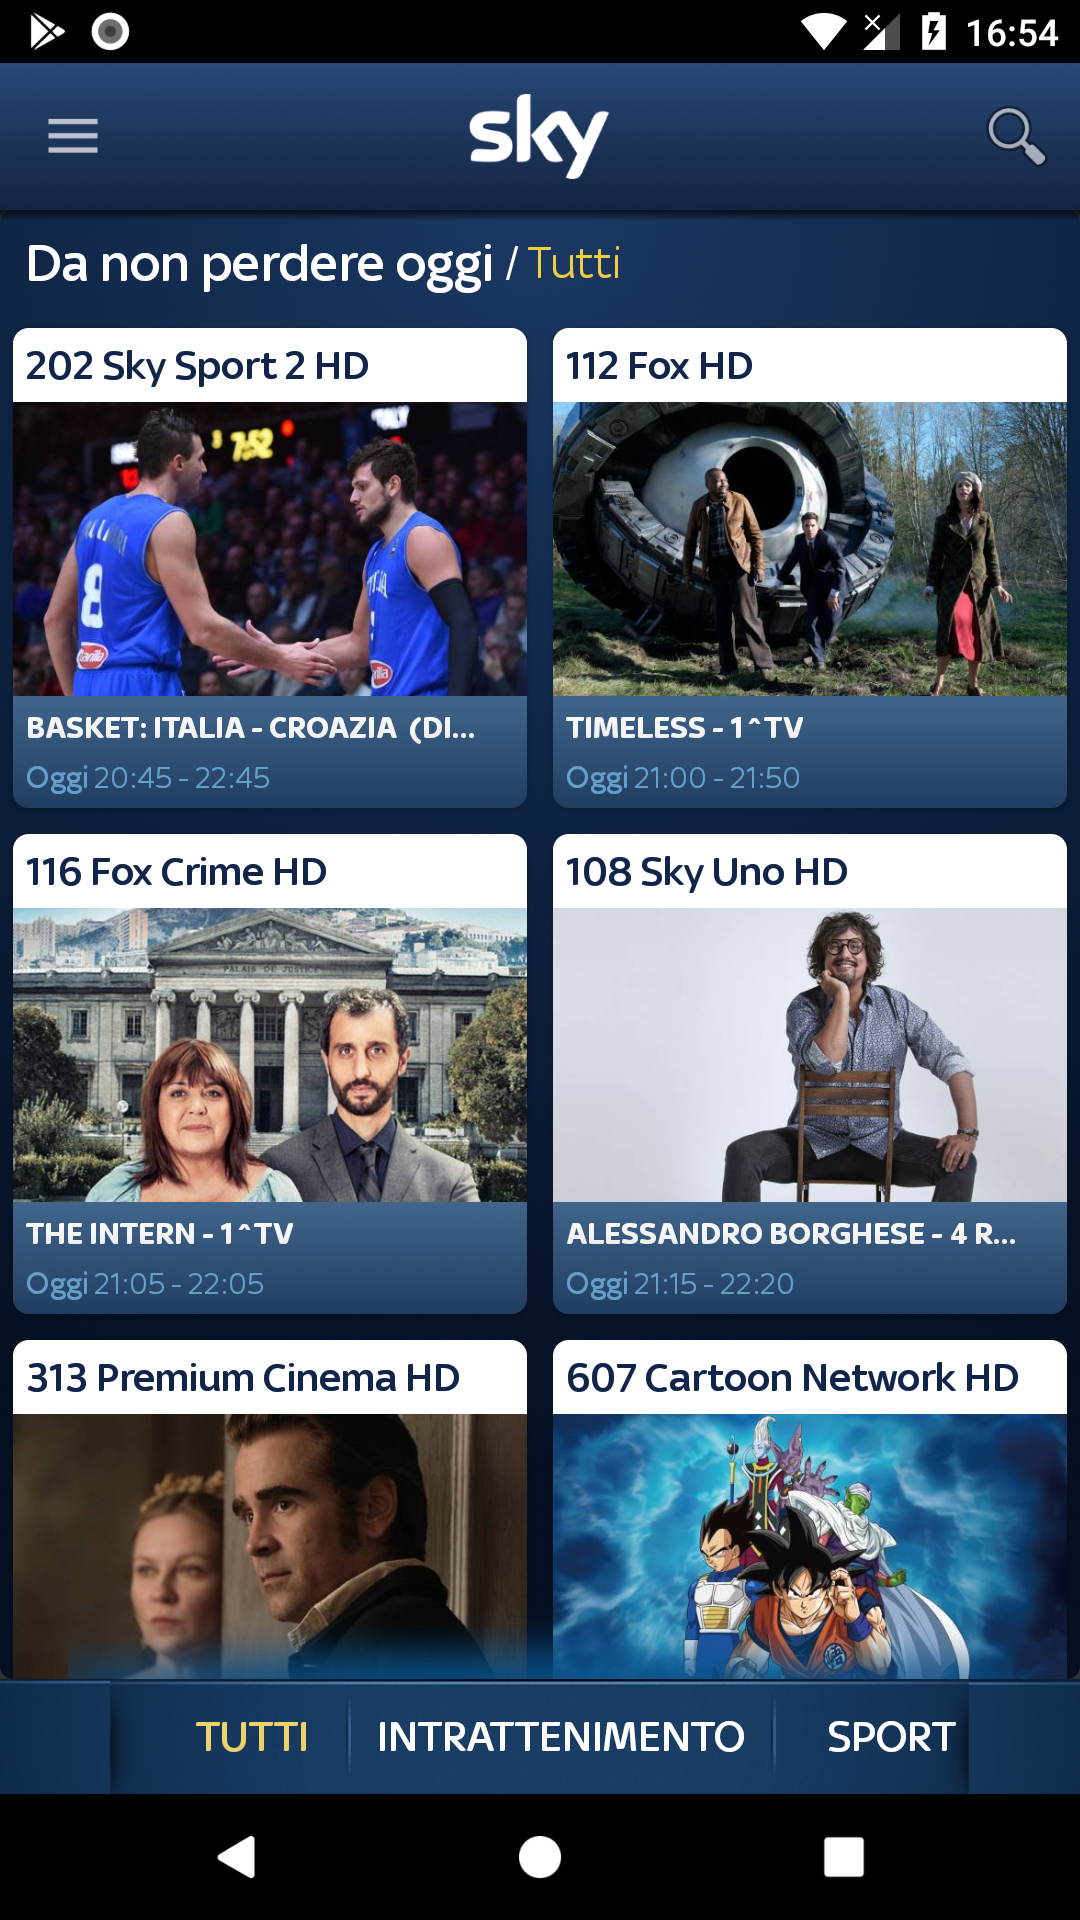 Sky Guida TV APK 2.4.0 for Android – Download Sky Guida TV APK Latest  Version from APKFab.com